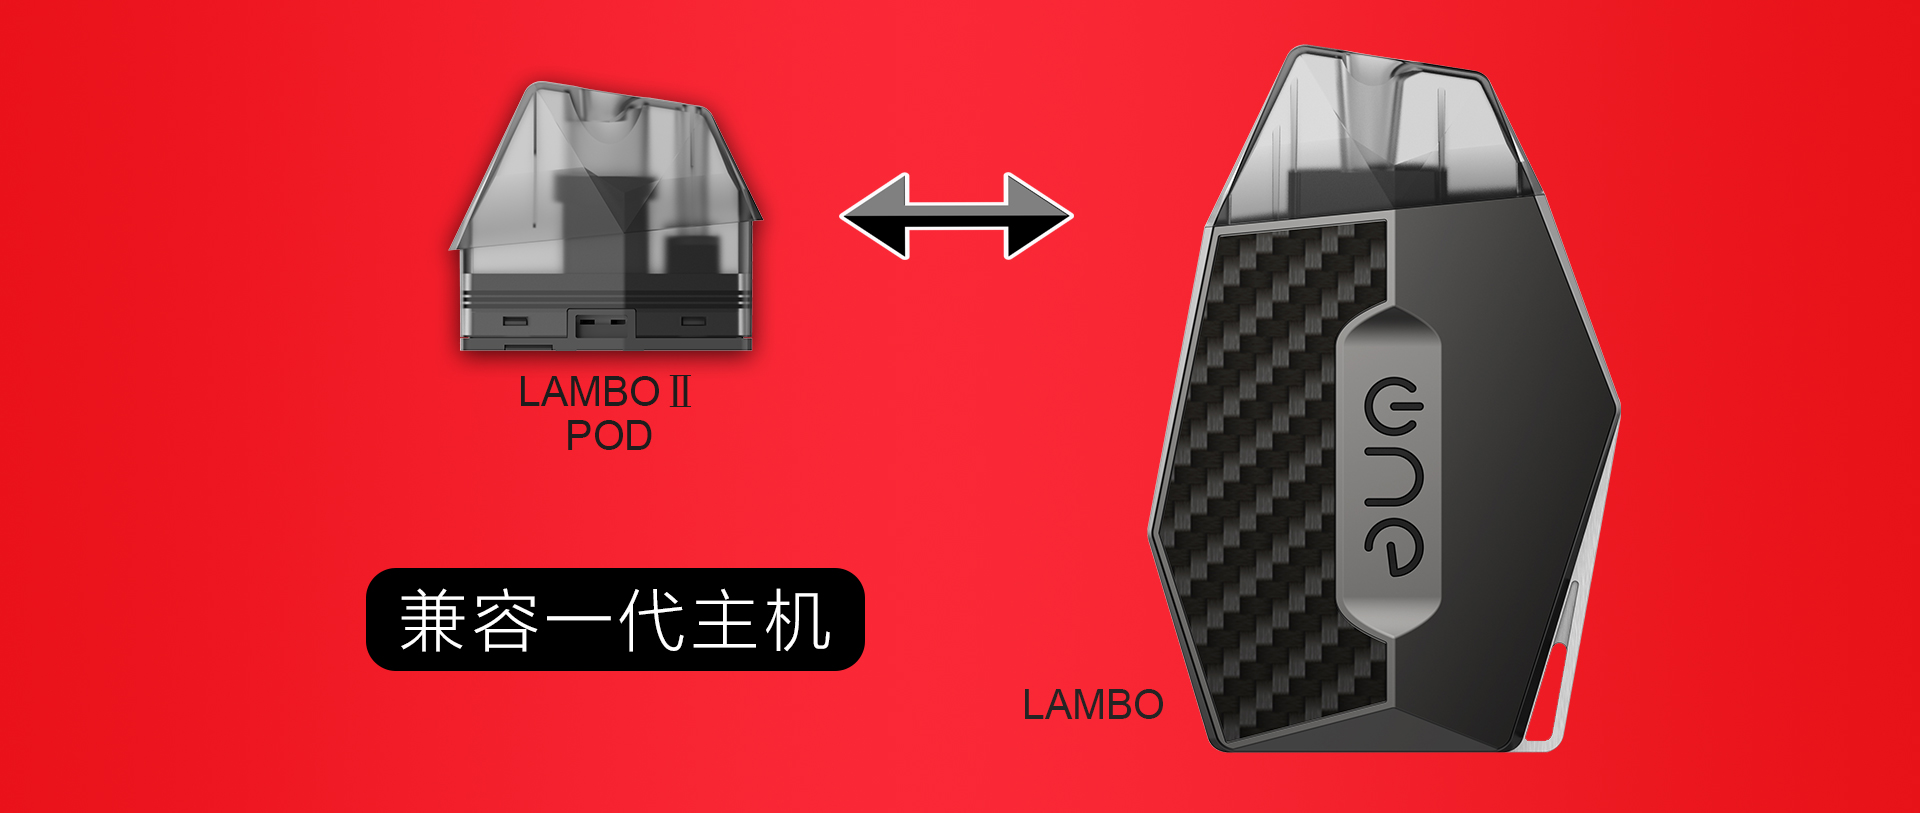 lambo-2中文_02_03.jpg